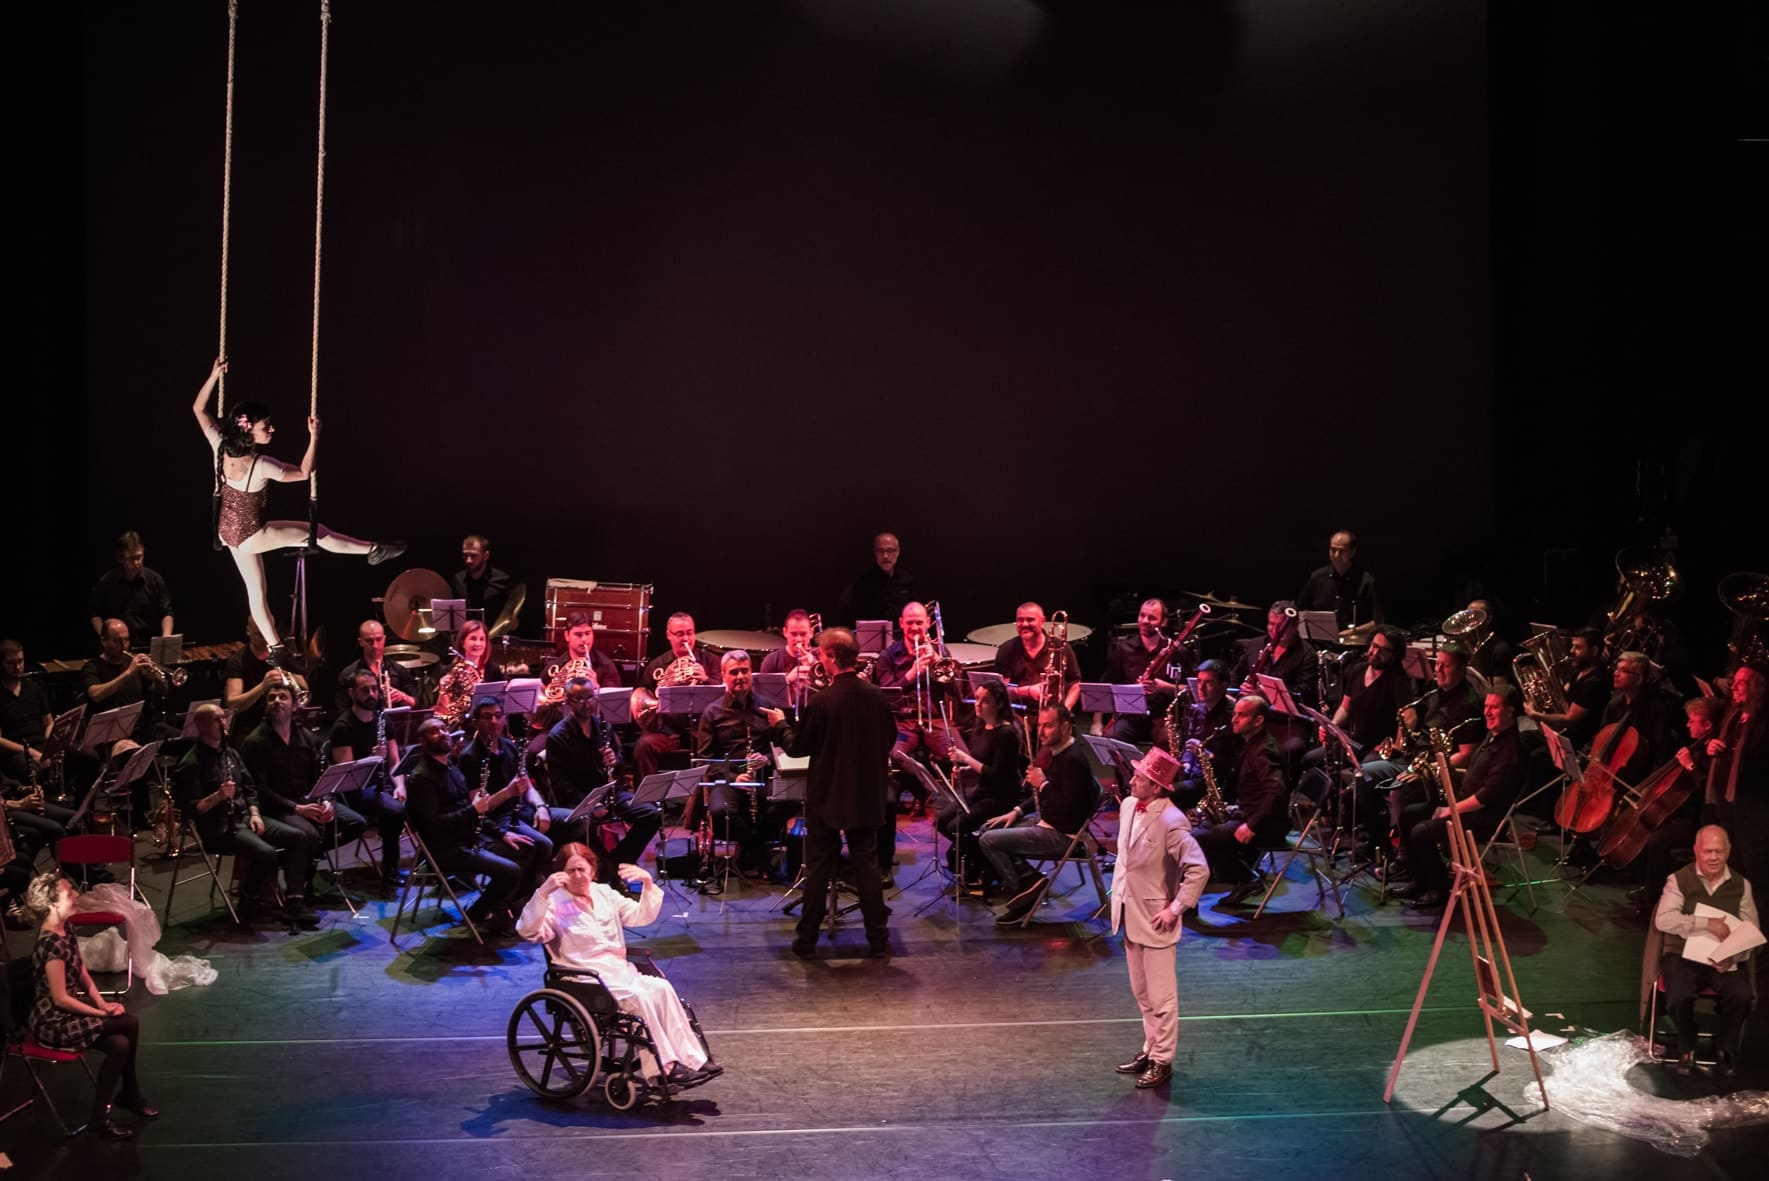 Orquesta sobre un escenario acompañada de varios personajes